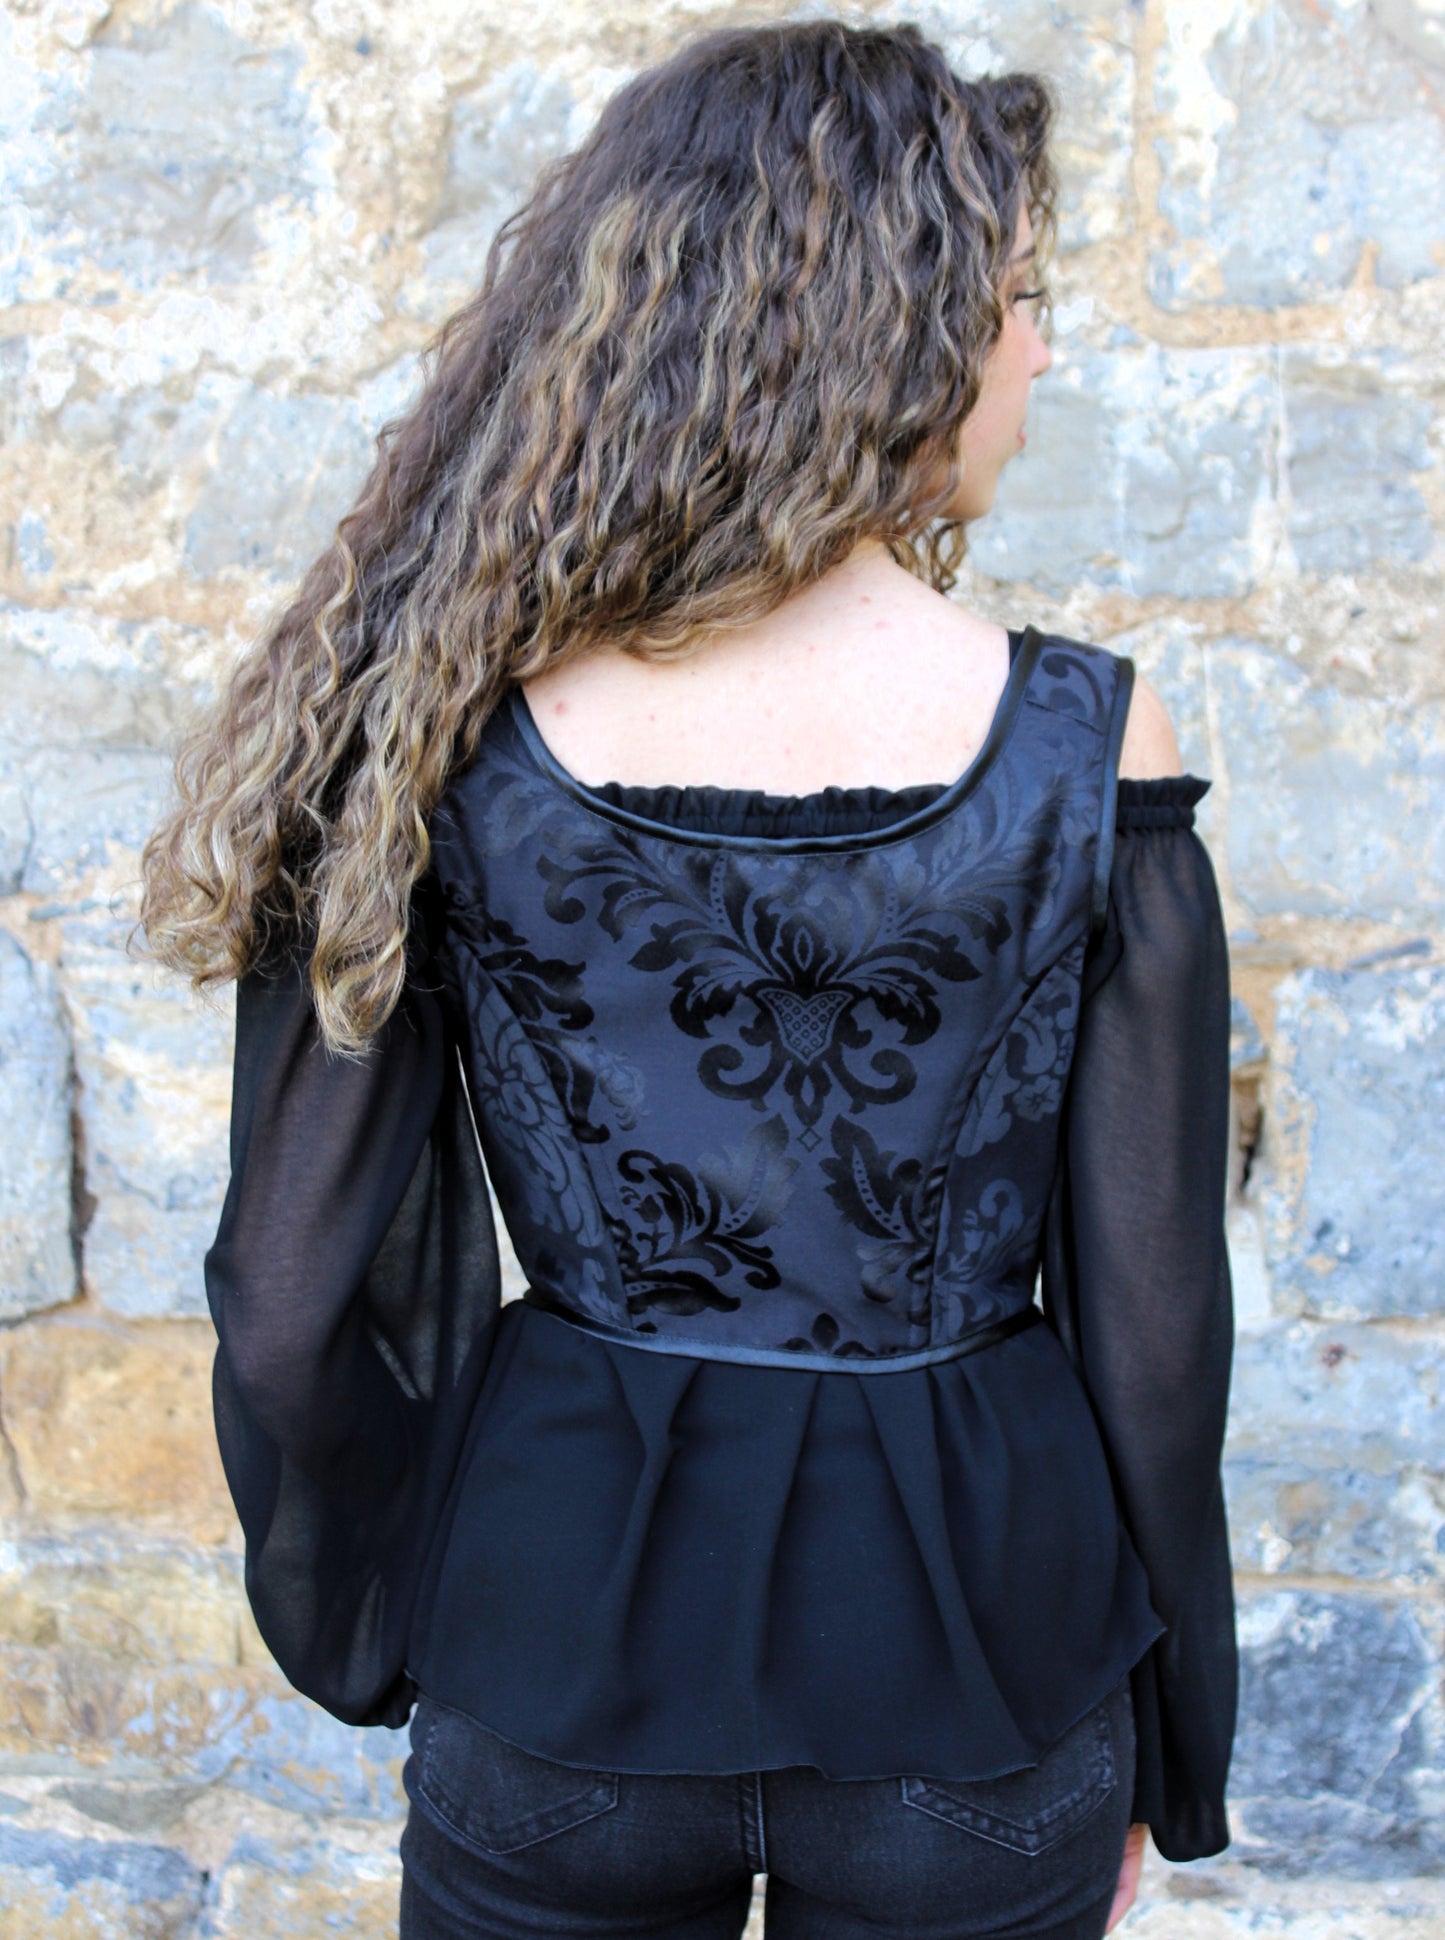 Stunning black chiffon puff sleeve blouse